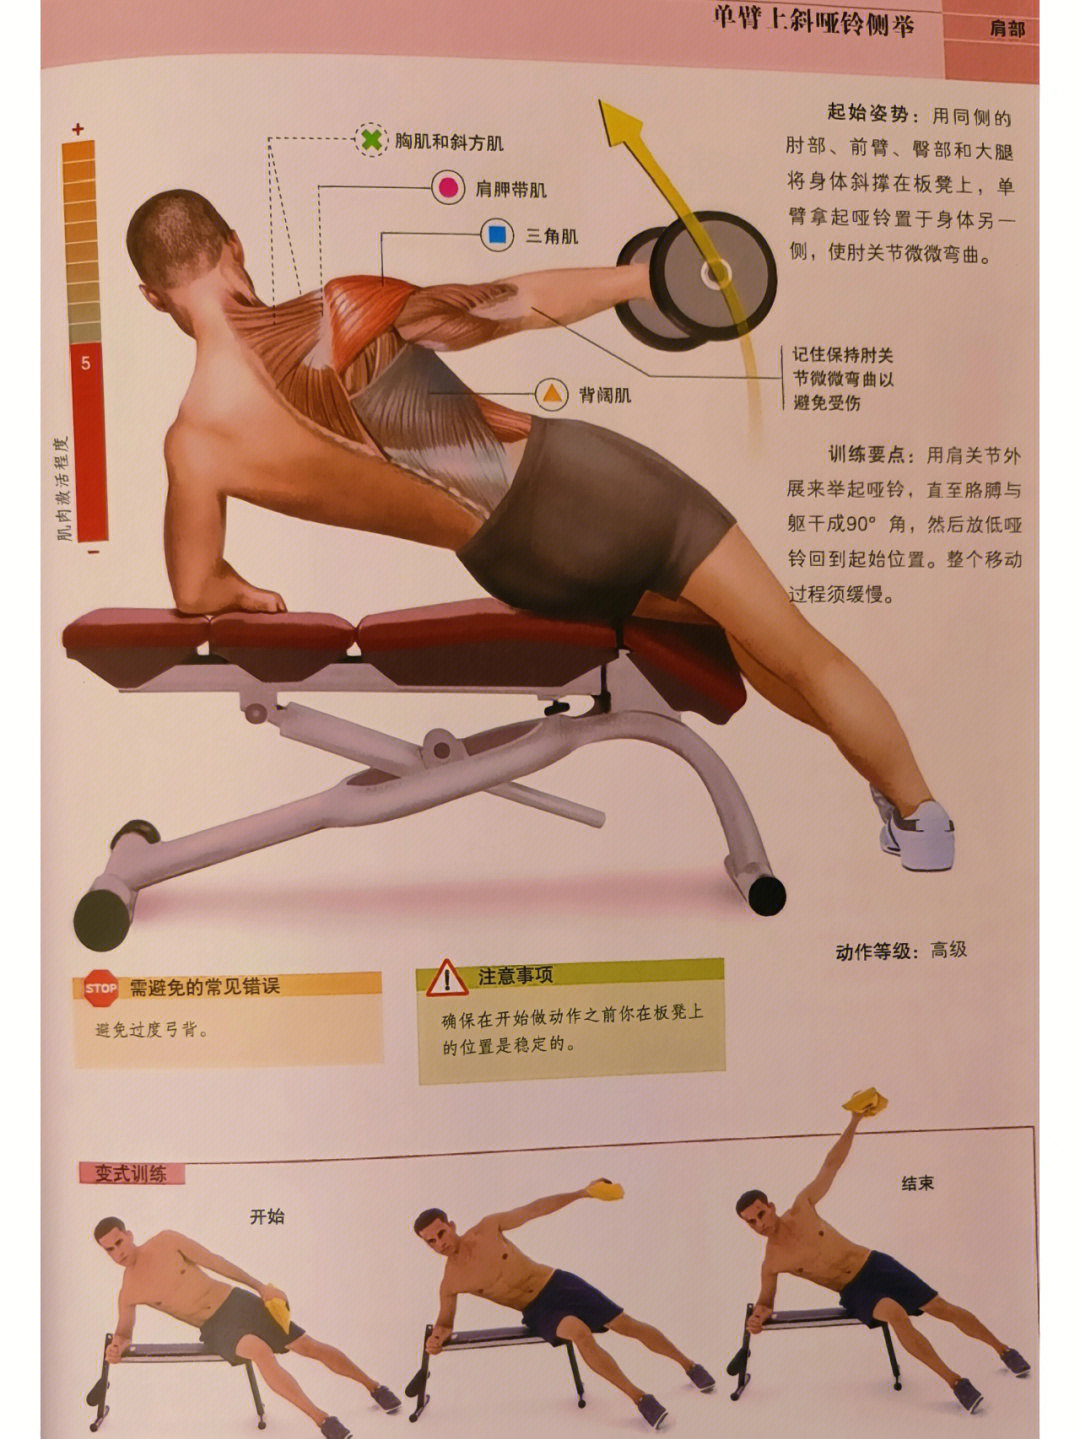 臀部和大腿将身体斜撑在板凳上,单臂拿起哑铃置于身体另一侧,使肘关节